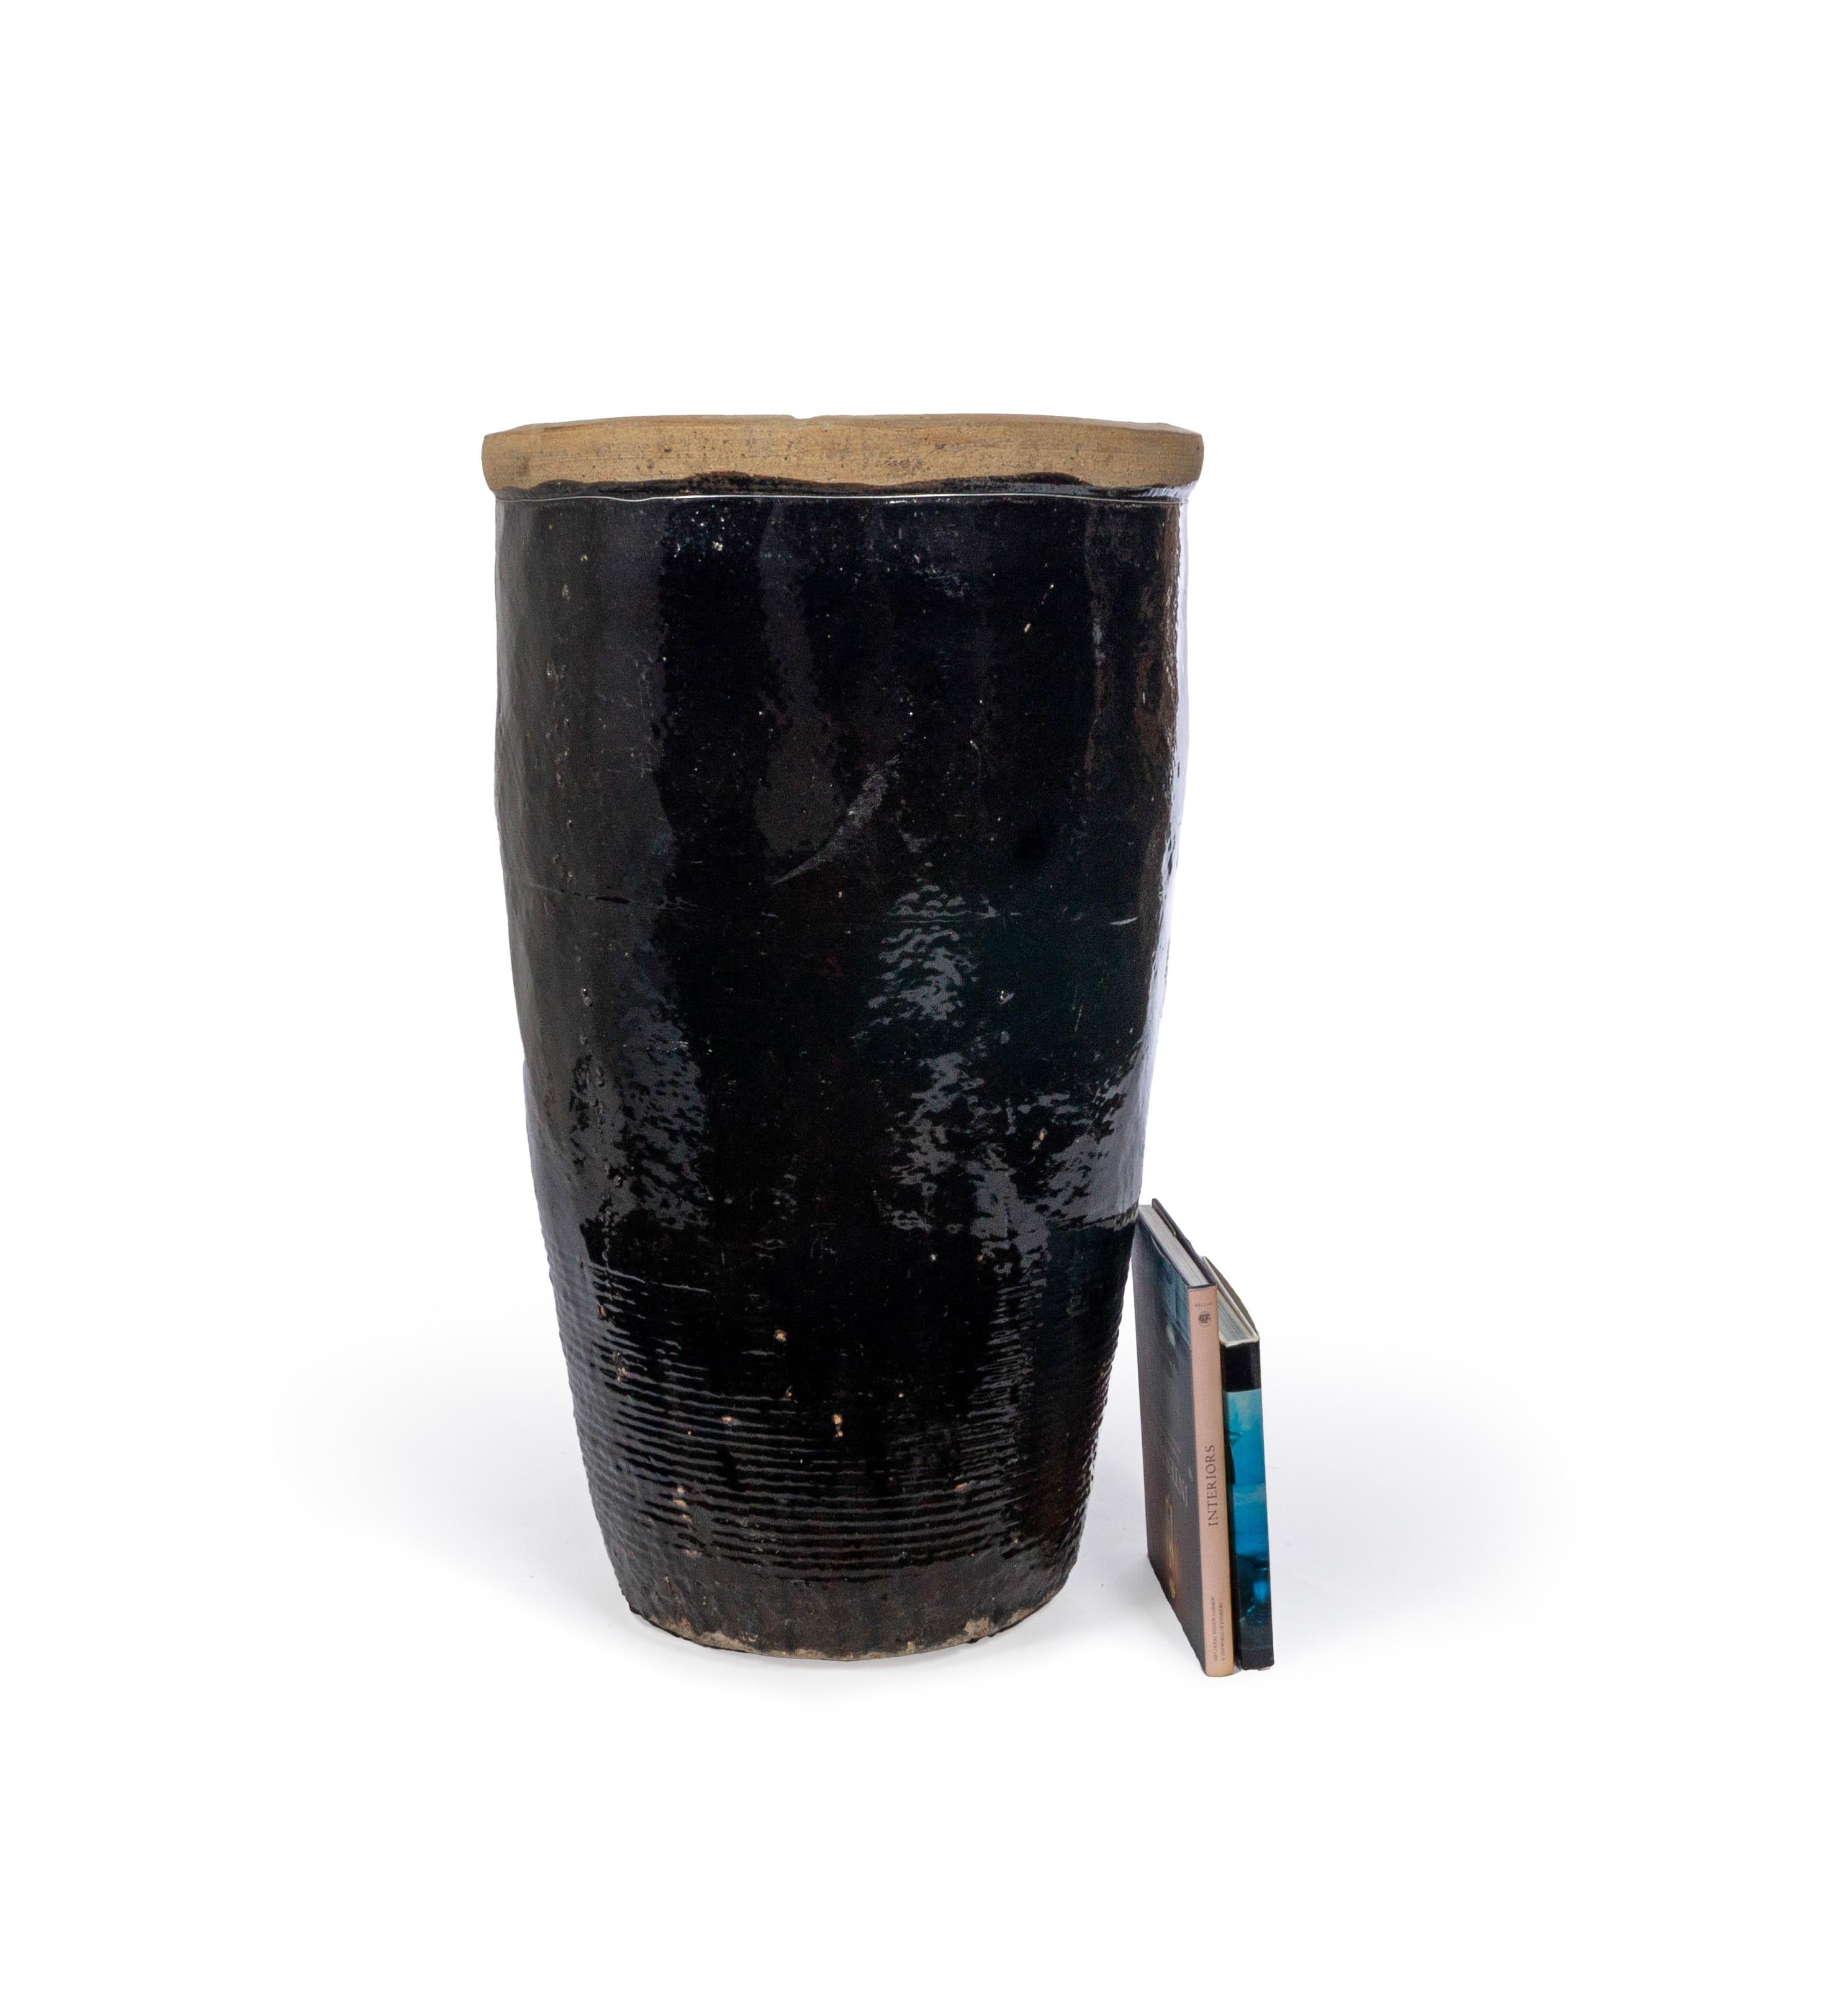 Dieses Vorratsgefäß hat einen schönen sandfarbenen, strukturierten Rand und eine glänzende schwarze Schokoladenglasur, die sich über die gesamte Länge erstreckt.

Dieses Stück ist Teil von Brendan Bass' einzigartiger Kollektion Le Monde. Die